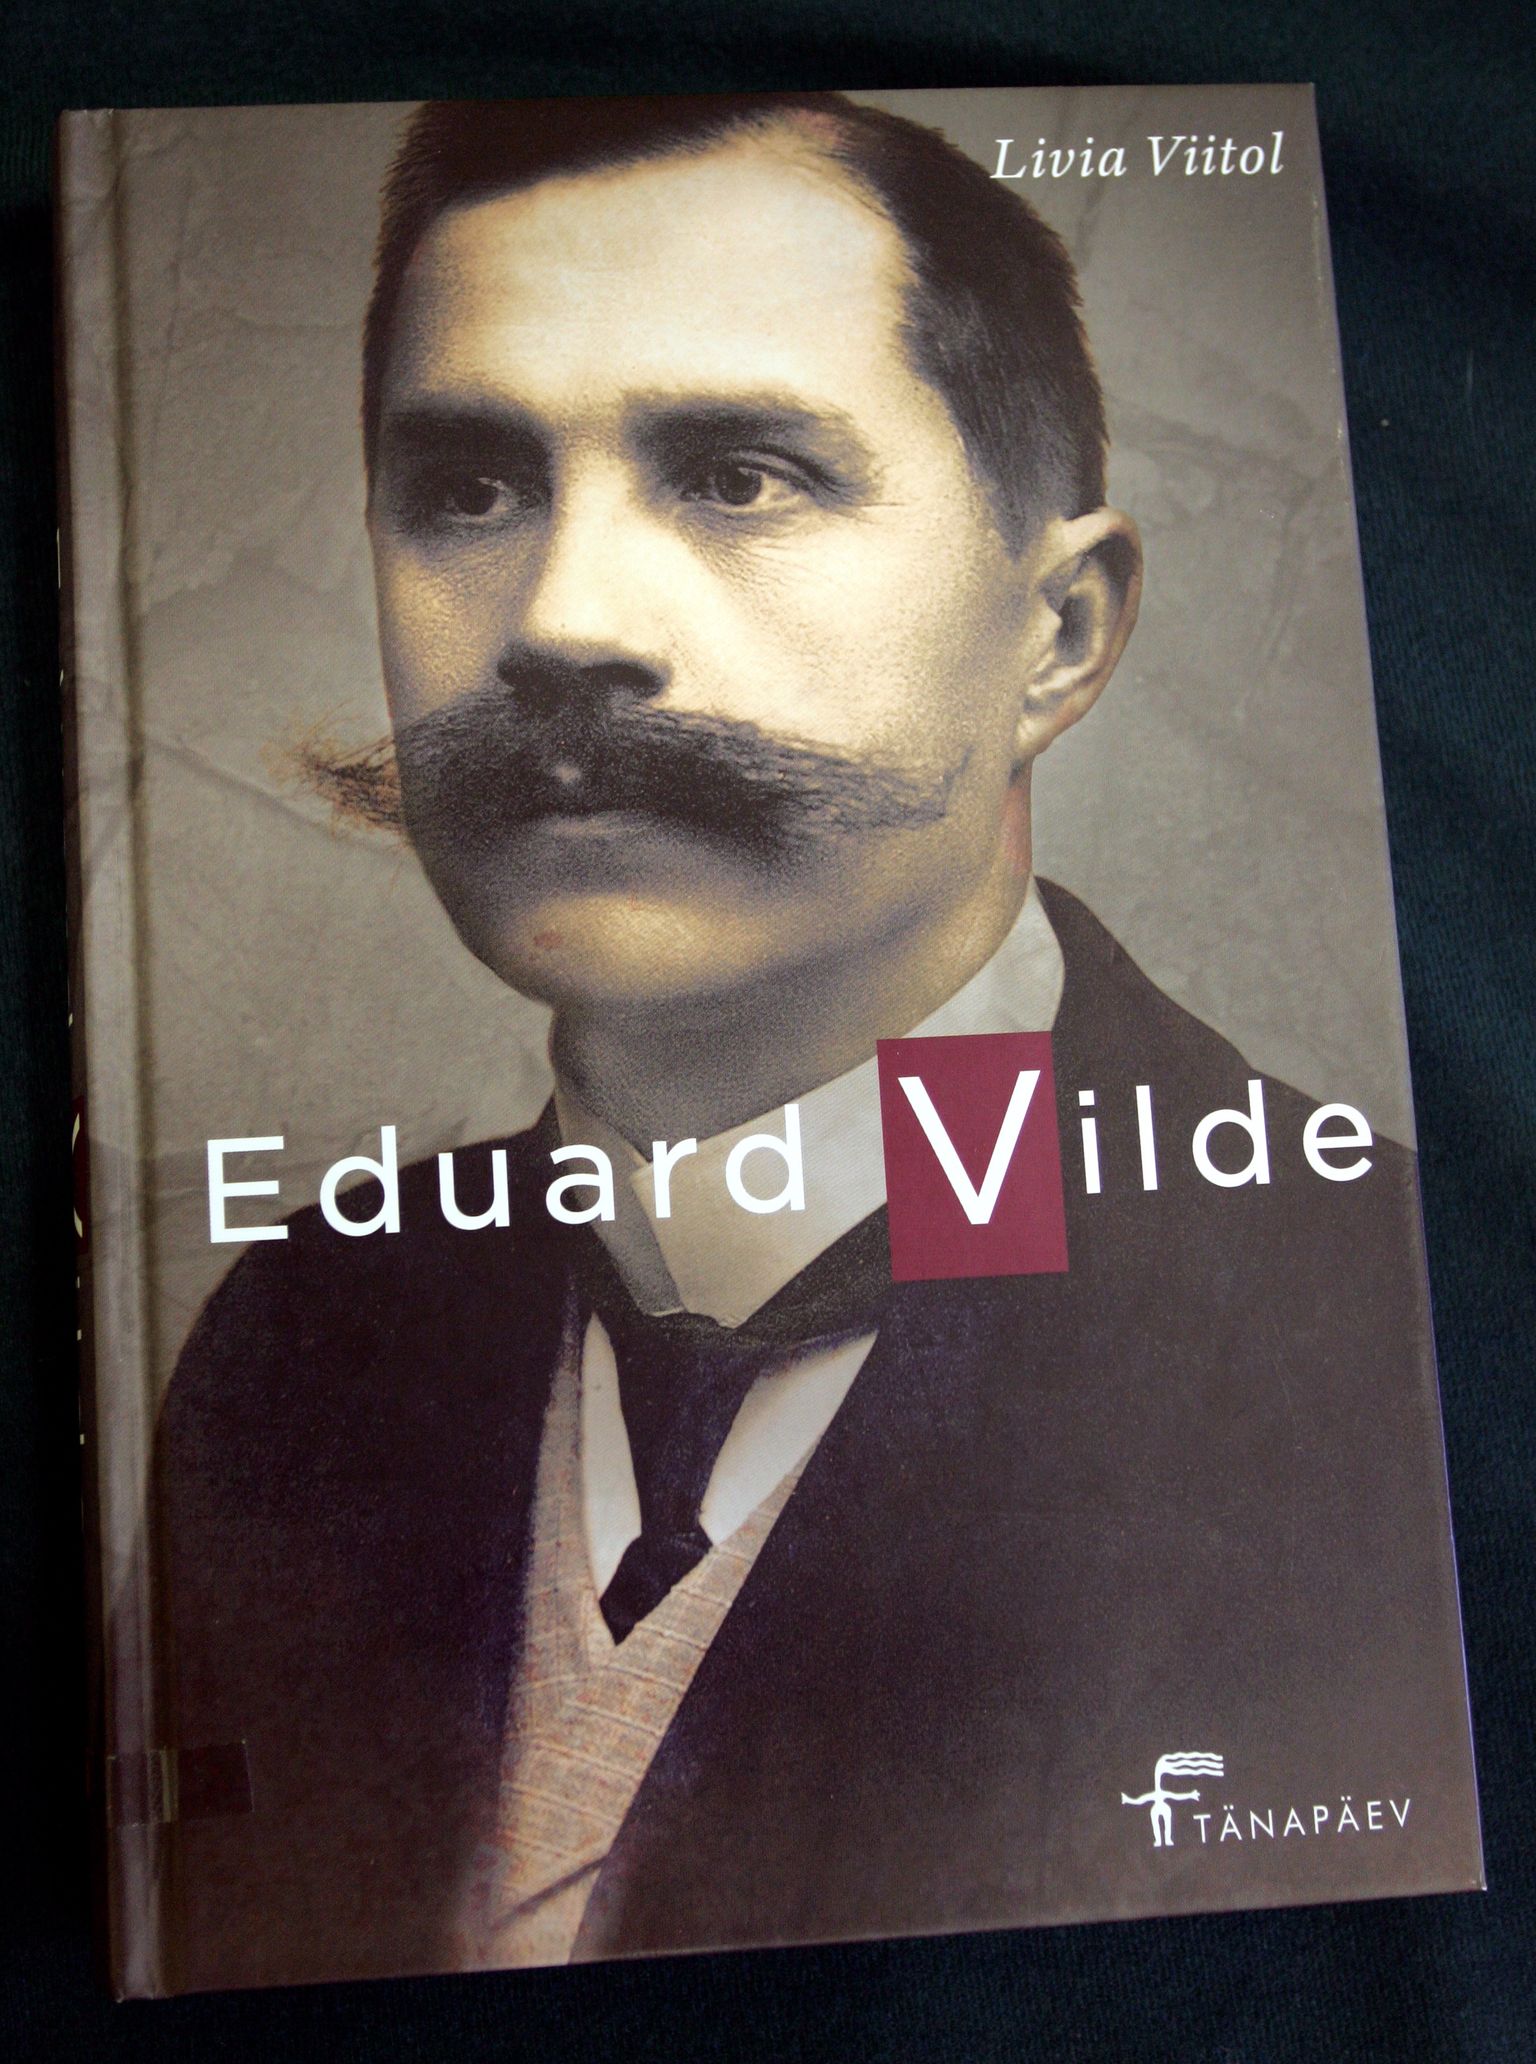 Pildil Livia Viitolile monograafia "Eduard Vilde".